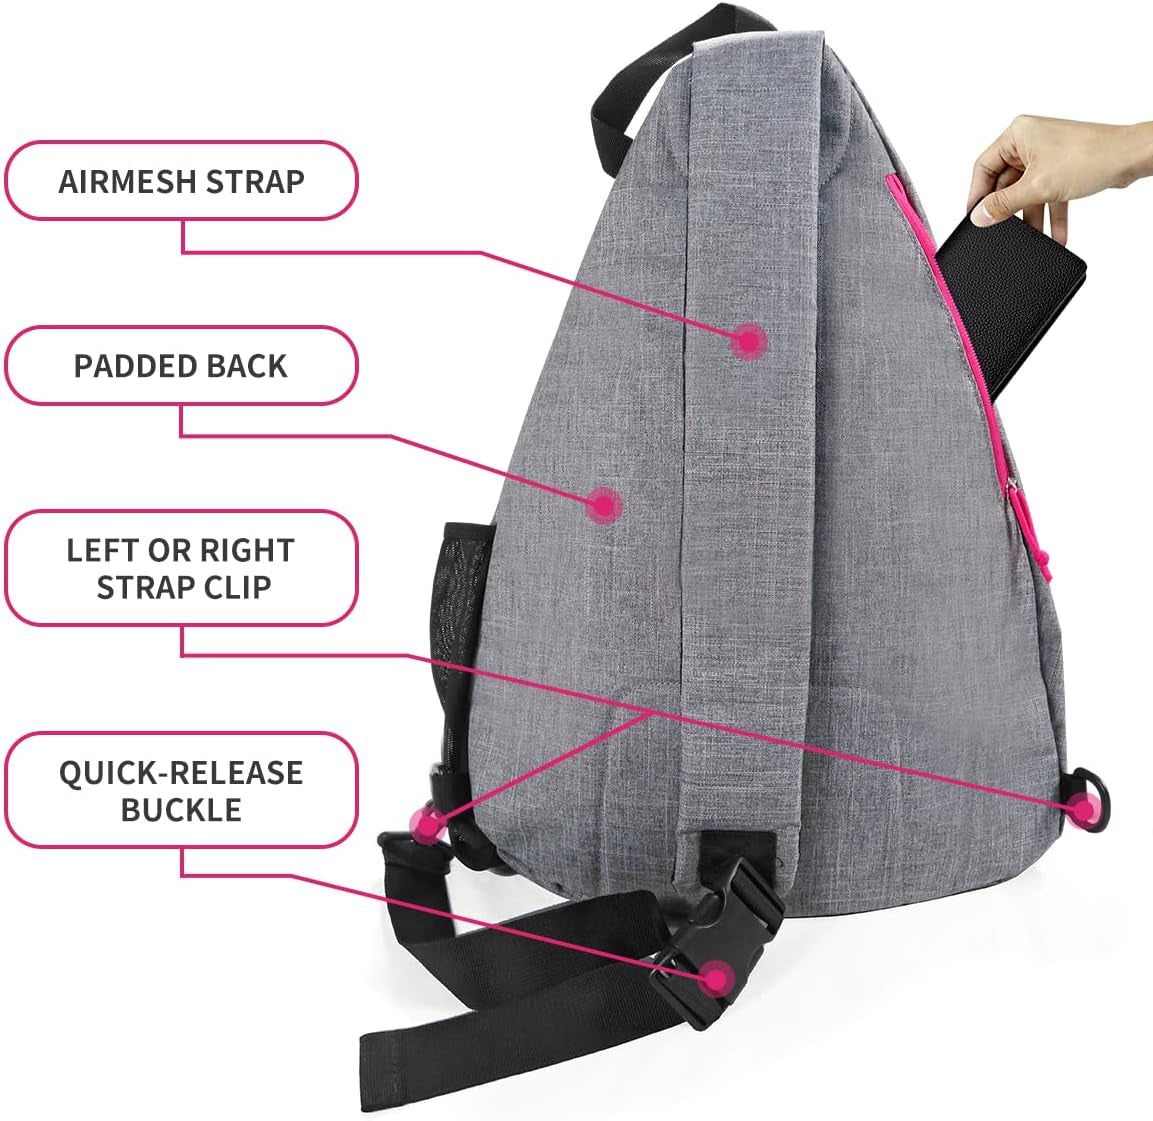 Pickleball Bag, Men'S & Women'S Pickleball Backpack, Adjustable Sling Bag with Fence Hook/Upgraded Capacity/Safety Pocket/Water Bottle Holder - 2023 Design Pickle Ball Paddle Bag